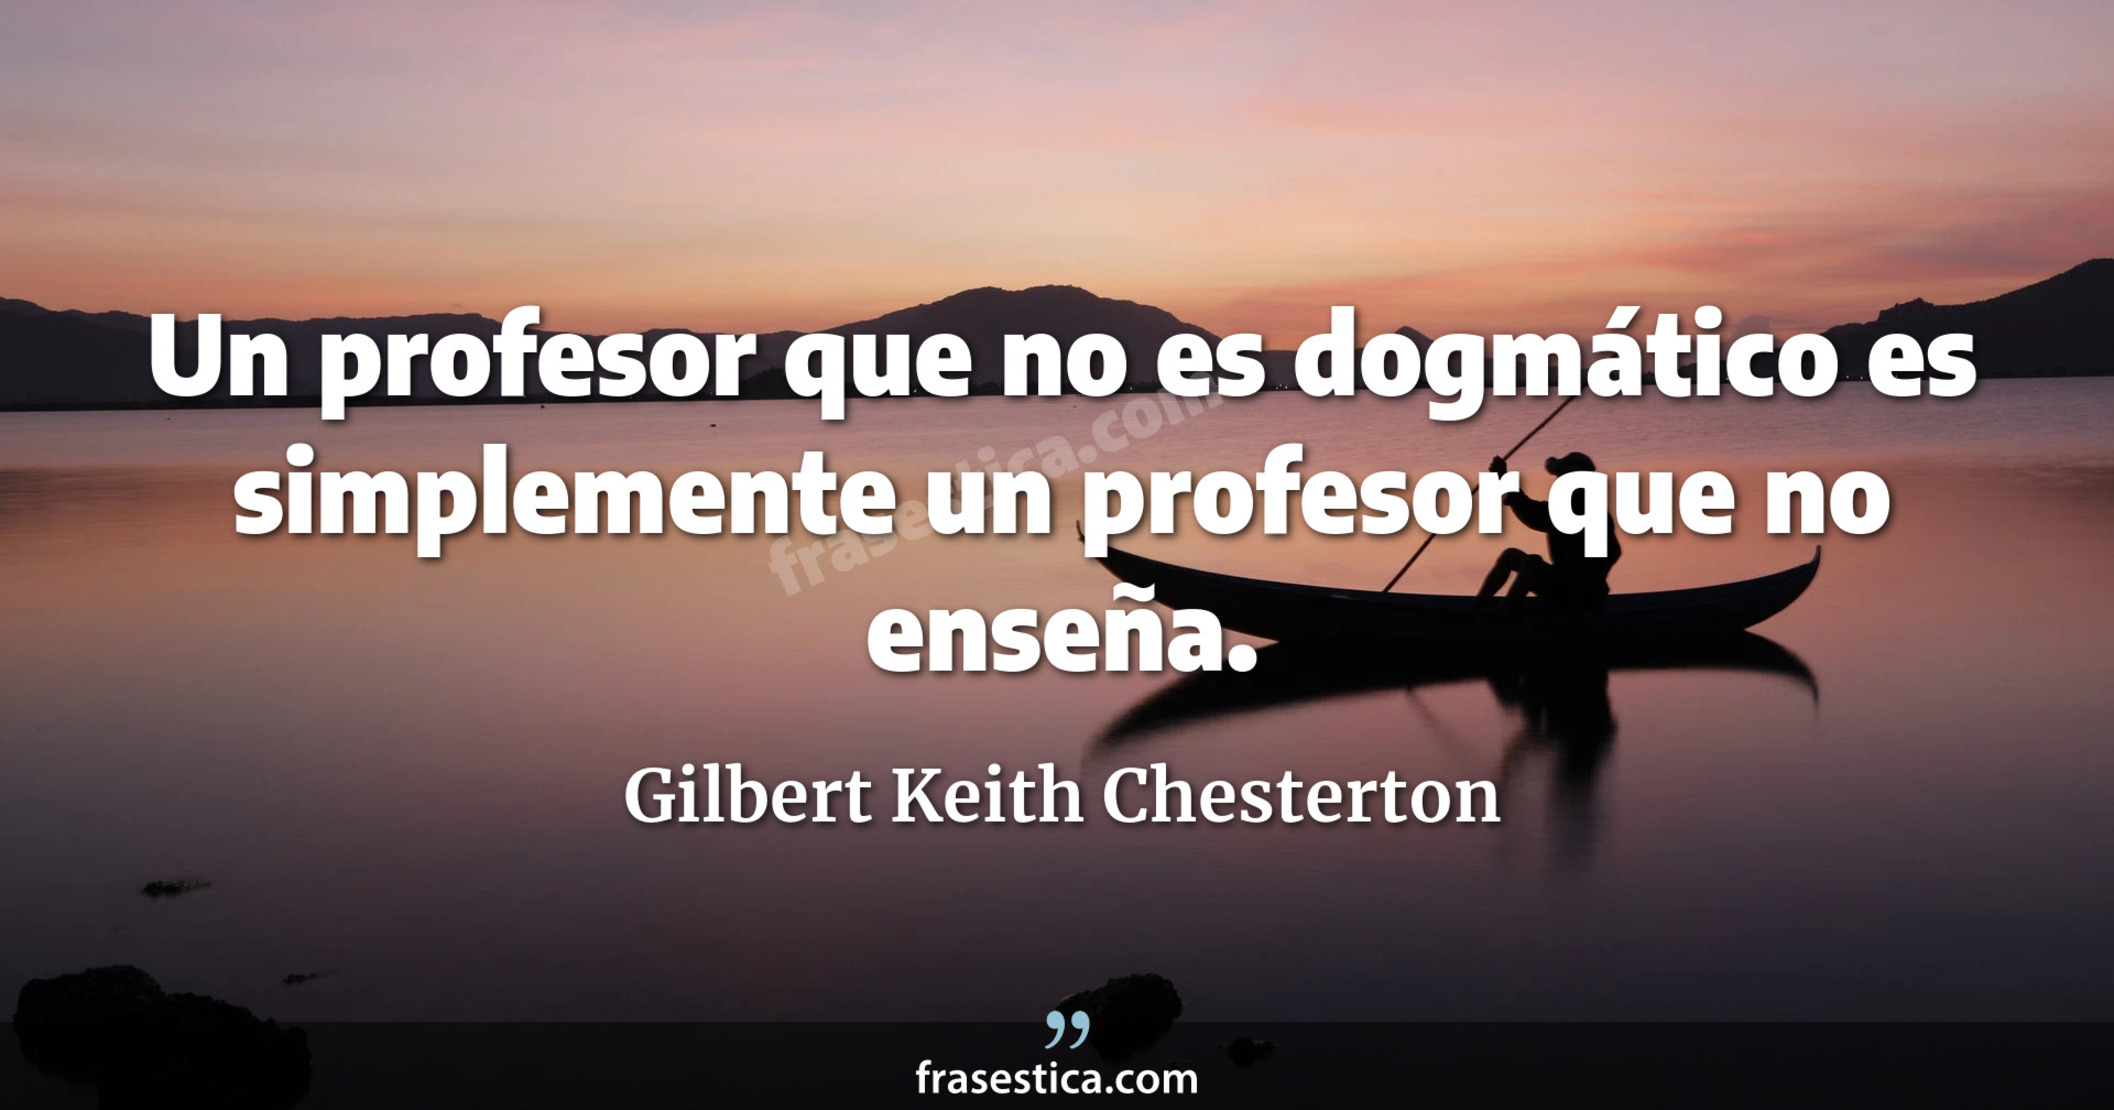 Un profesor que no es dogmático es simplemente un profesor que no enseña. - Gilbert Keith Chesterton